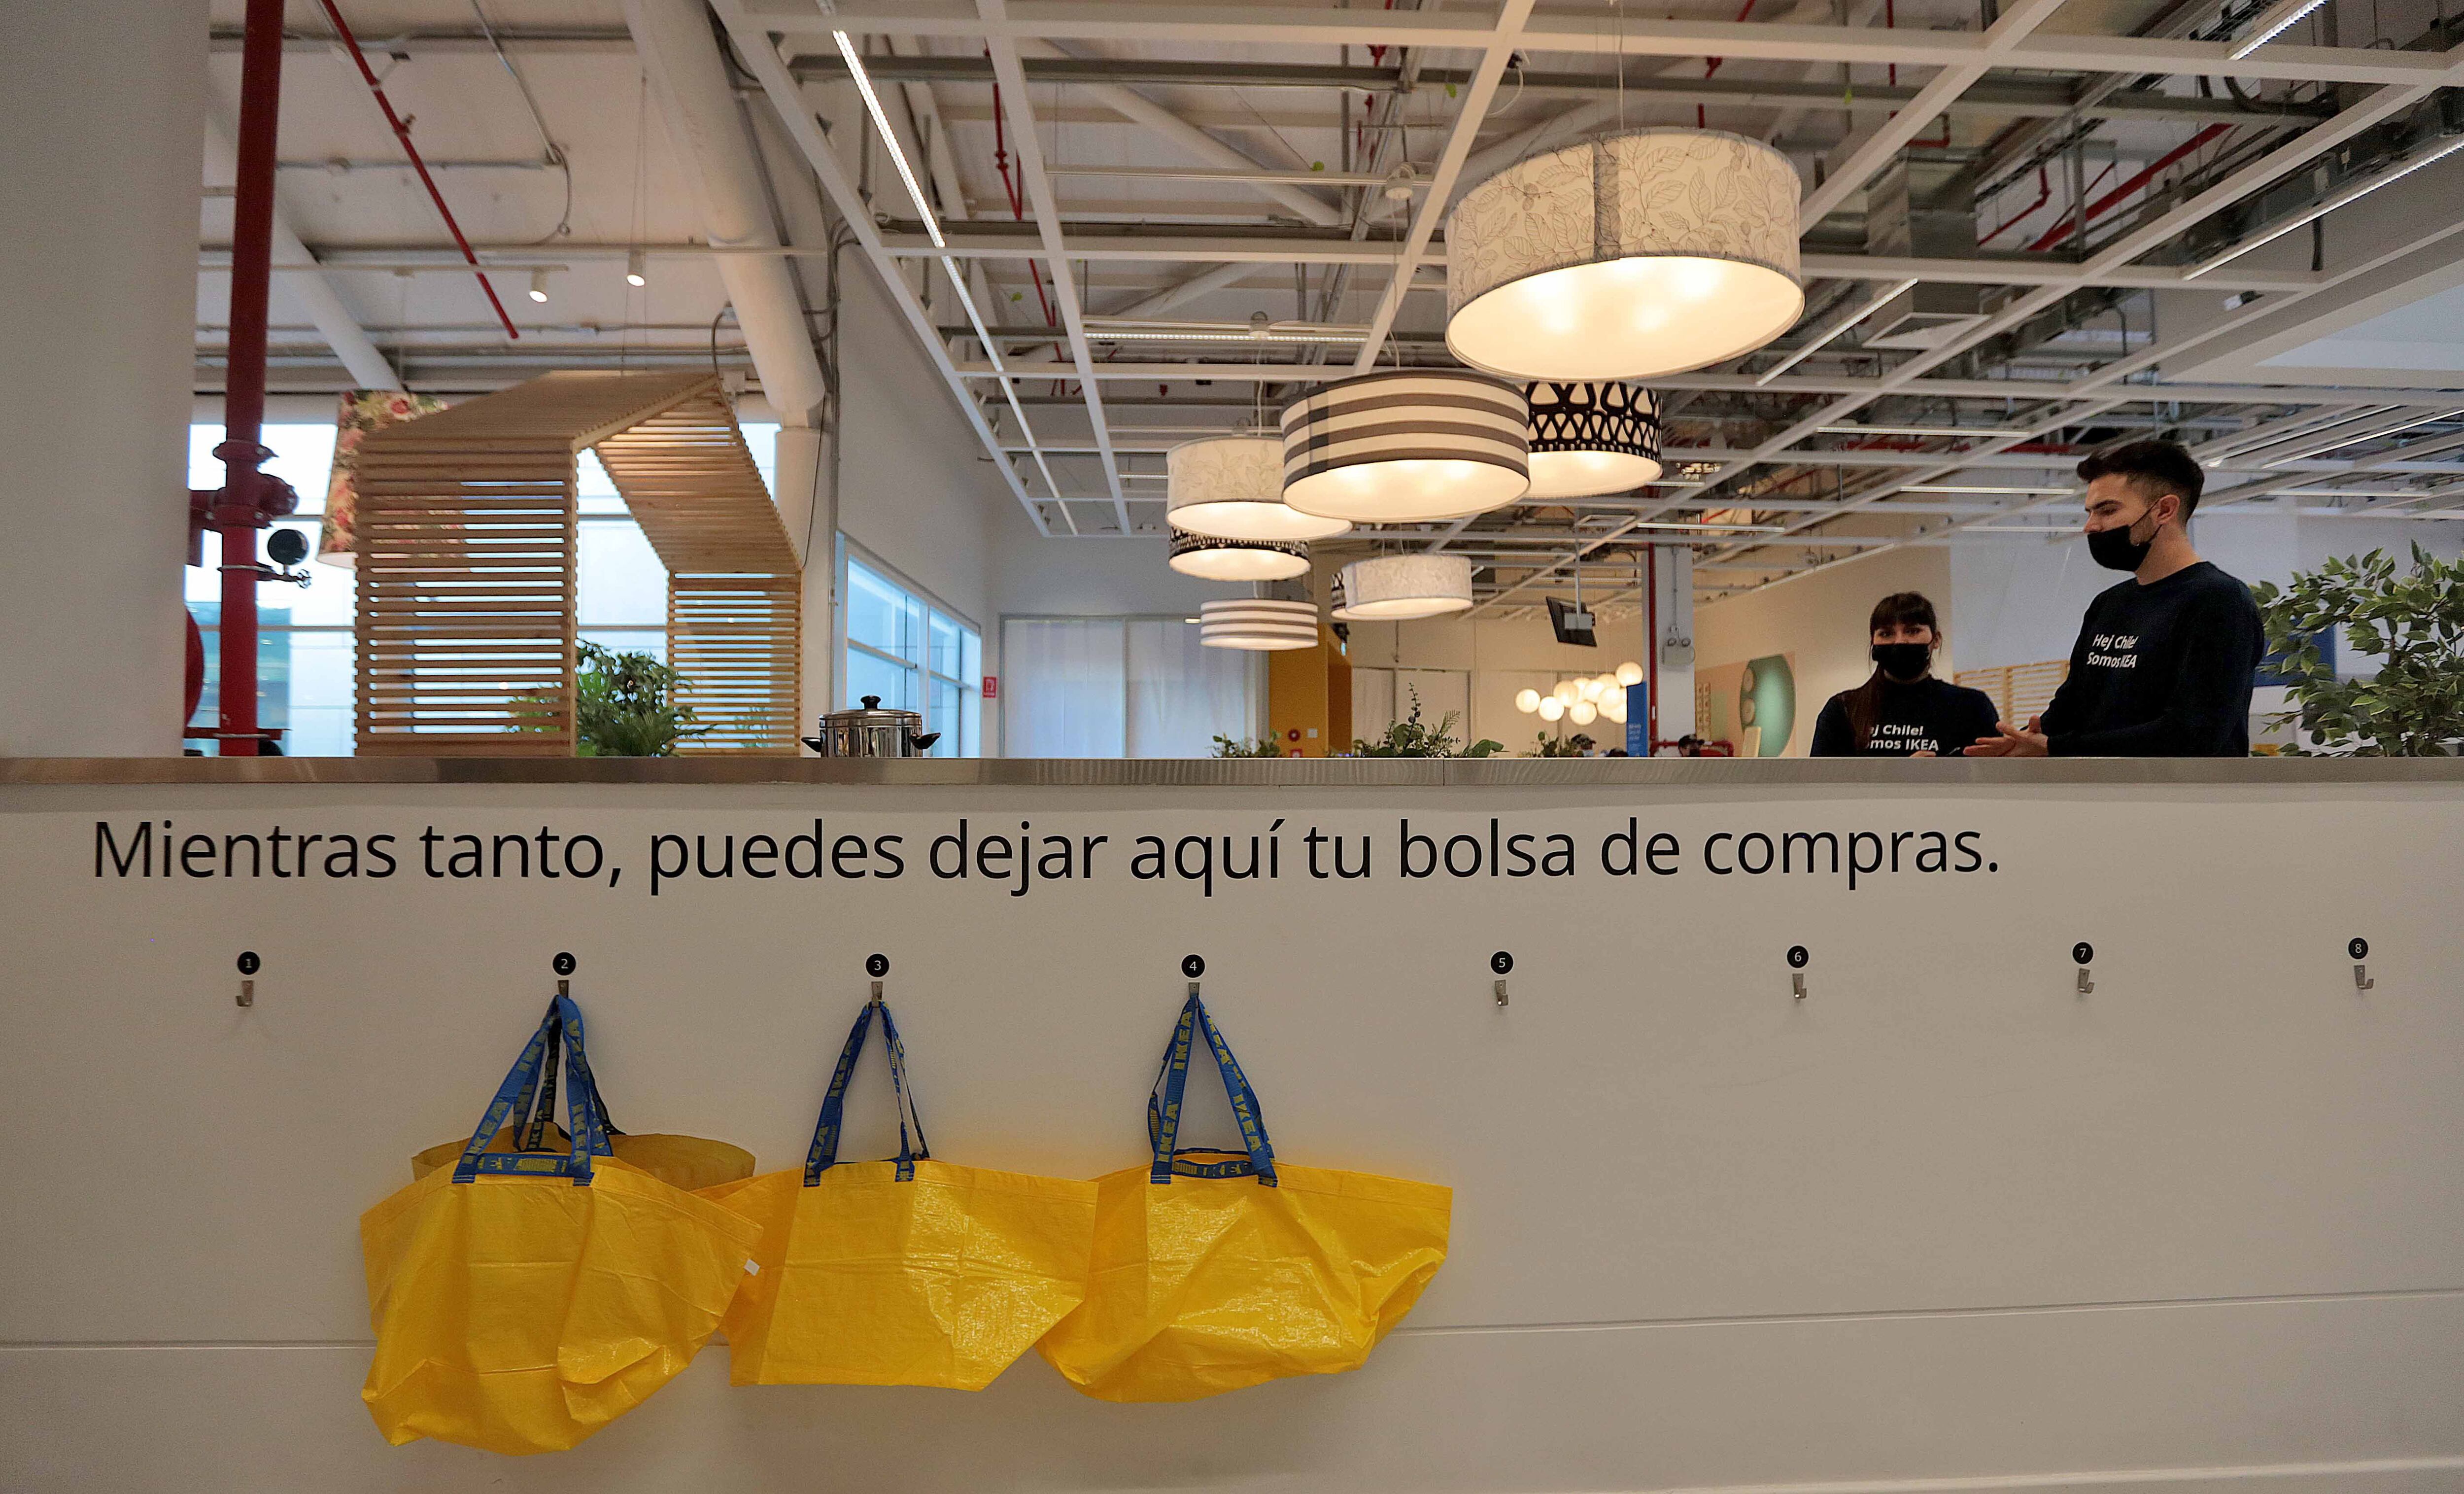 Ikea abre en Santiago un punto de diseño y planificación